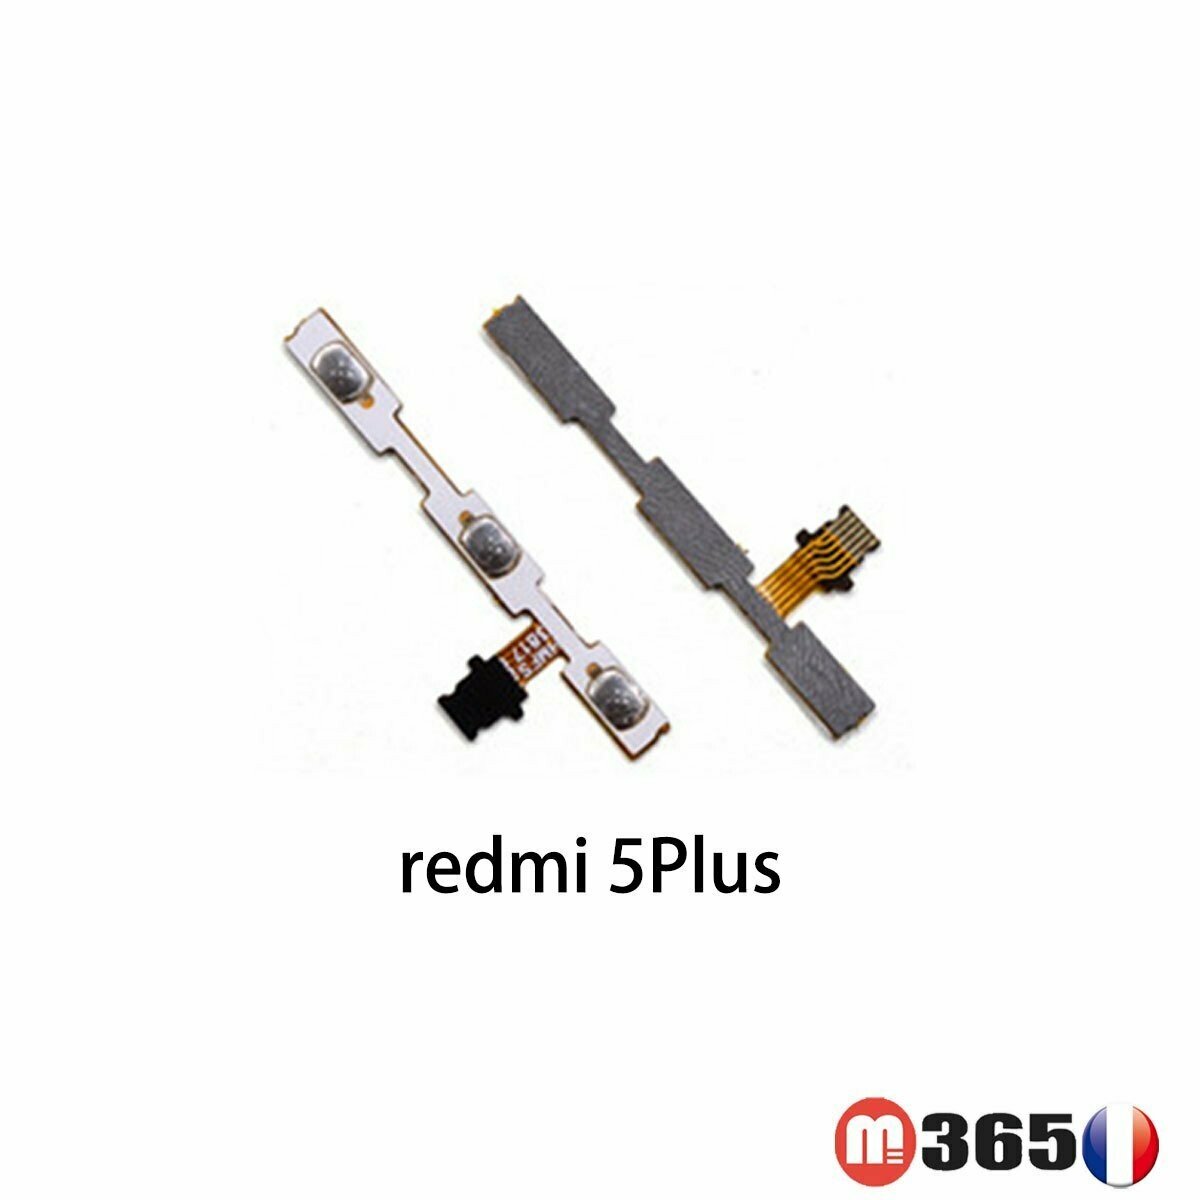 redmi 5plus nappe ON/OFF + volume son Nappe BOUTON POWER ALLUMAGE redmi 5plus